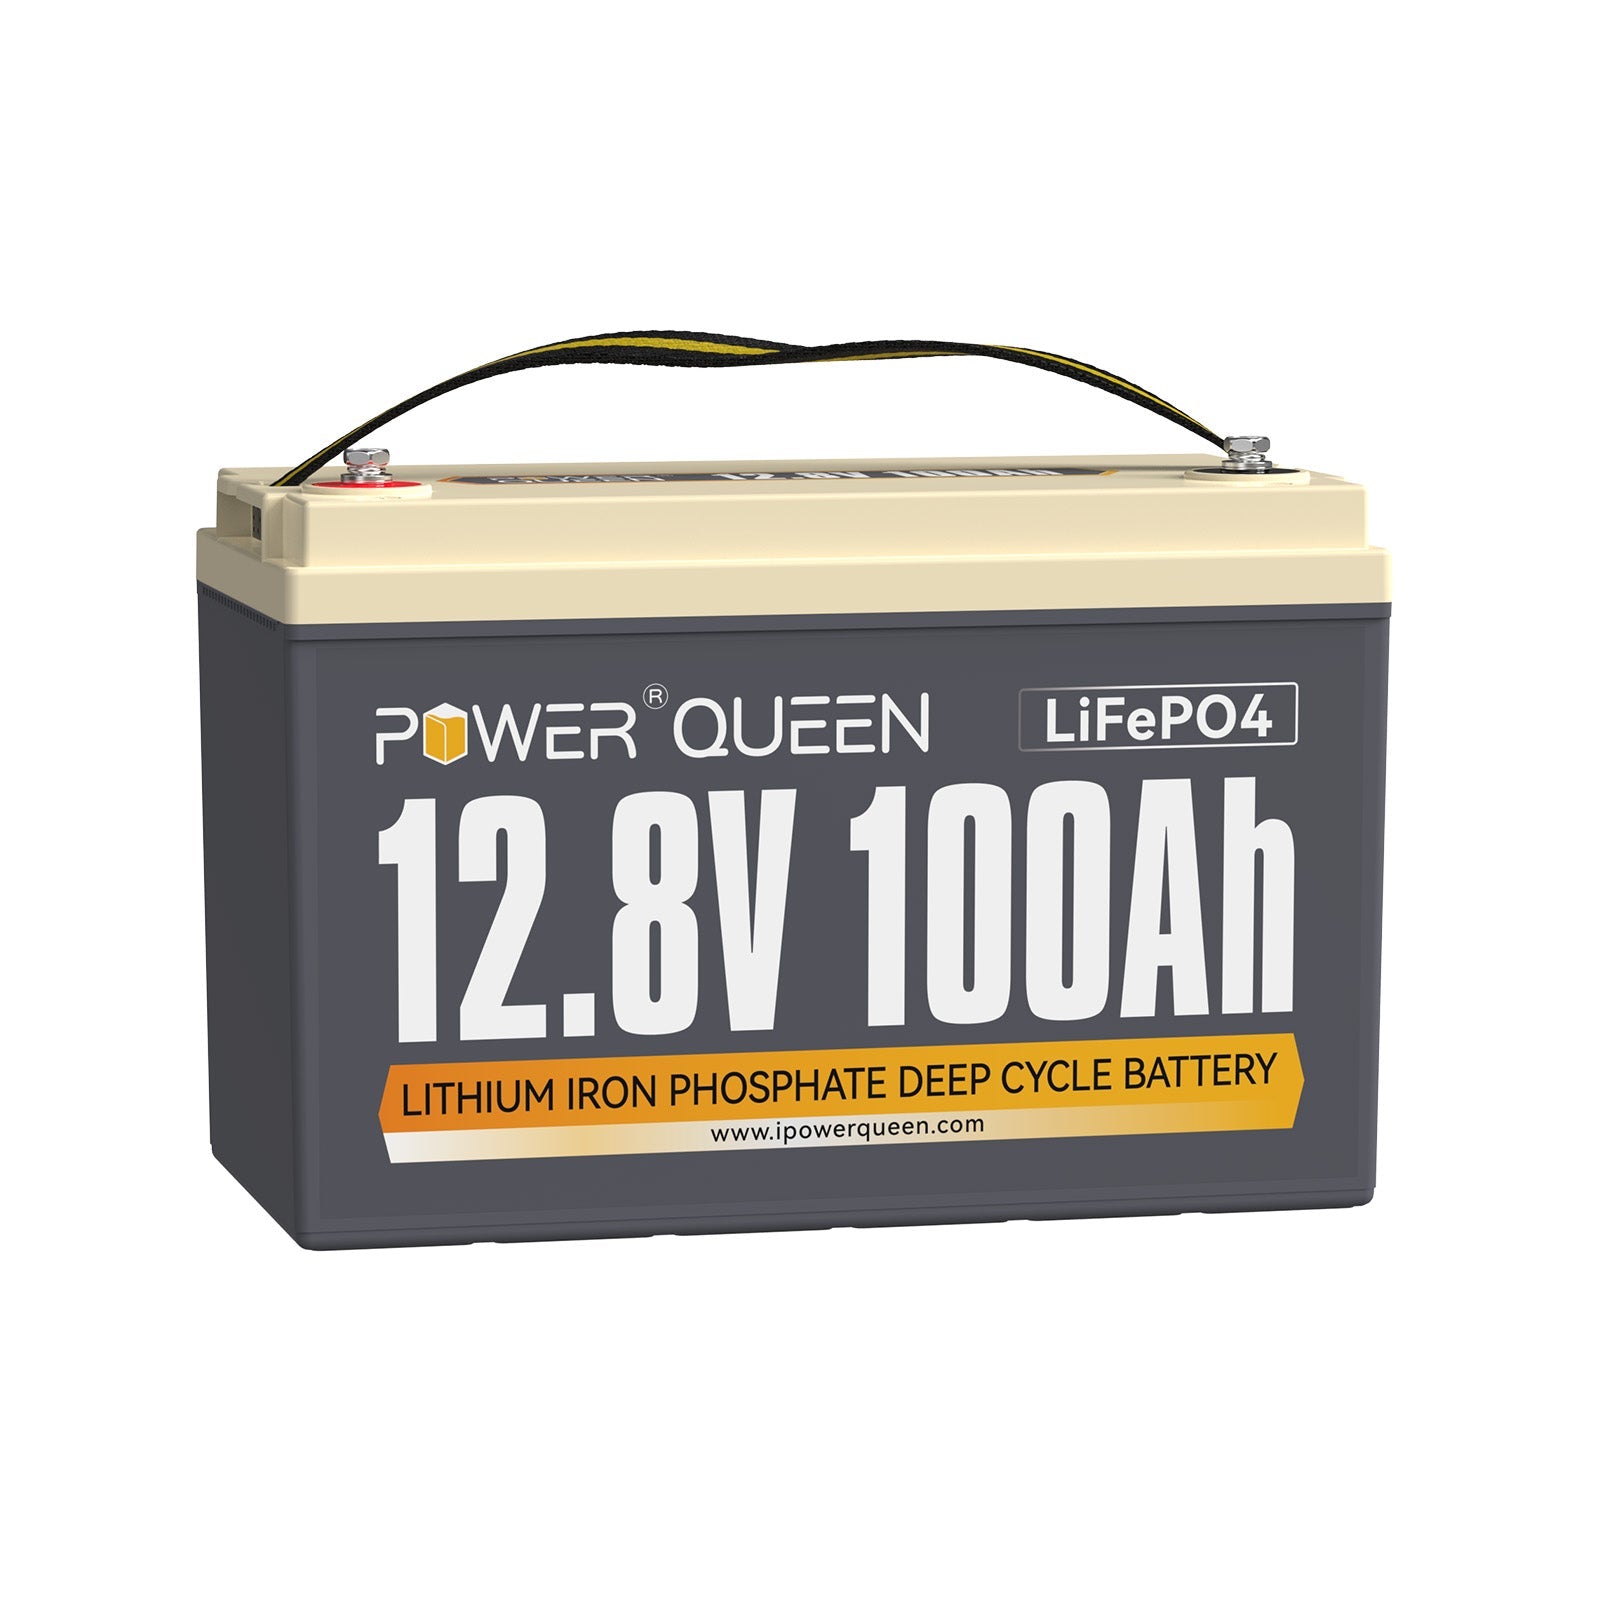 【0% IVA】Batería LiFePO4 Power Queen de 12,8 V y 100 Ah, BMS integrado de 100 A